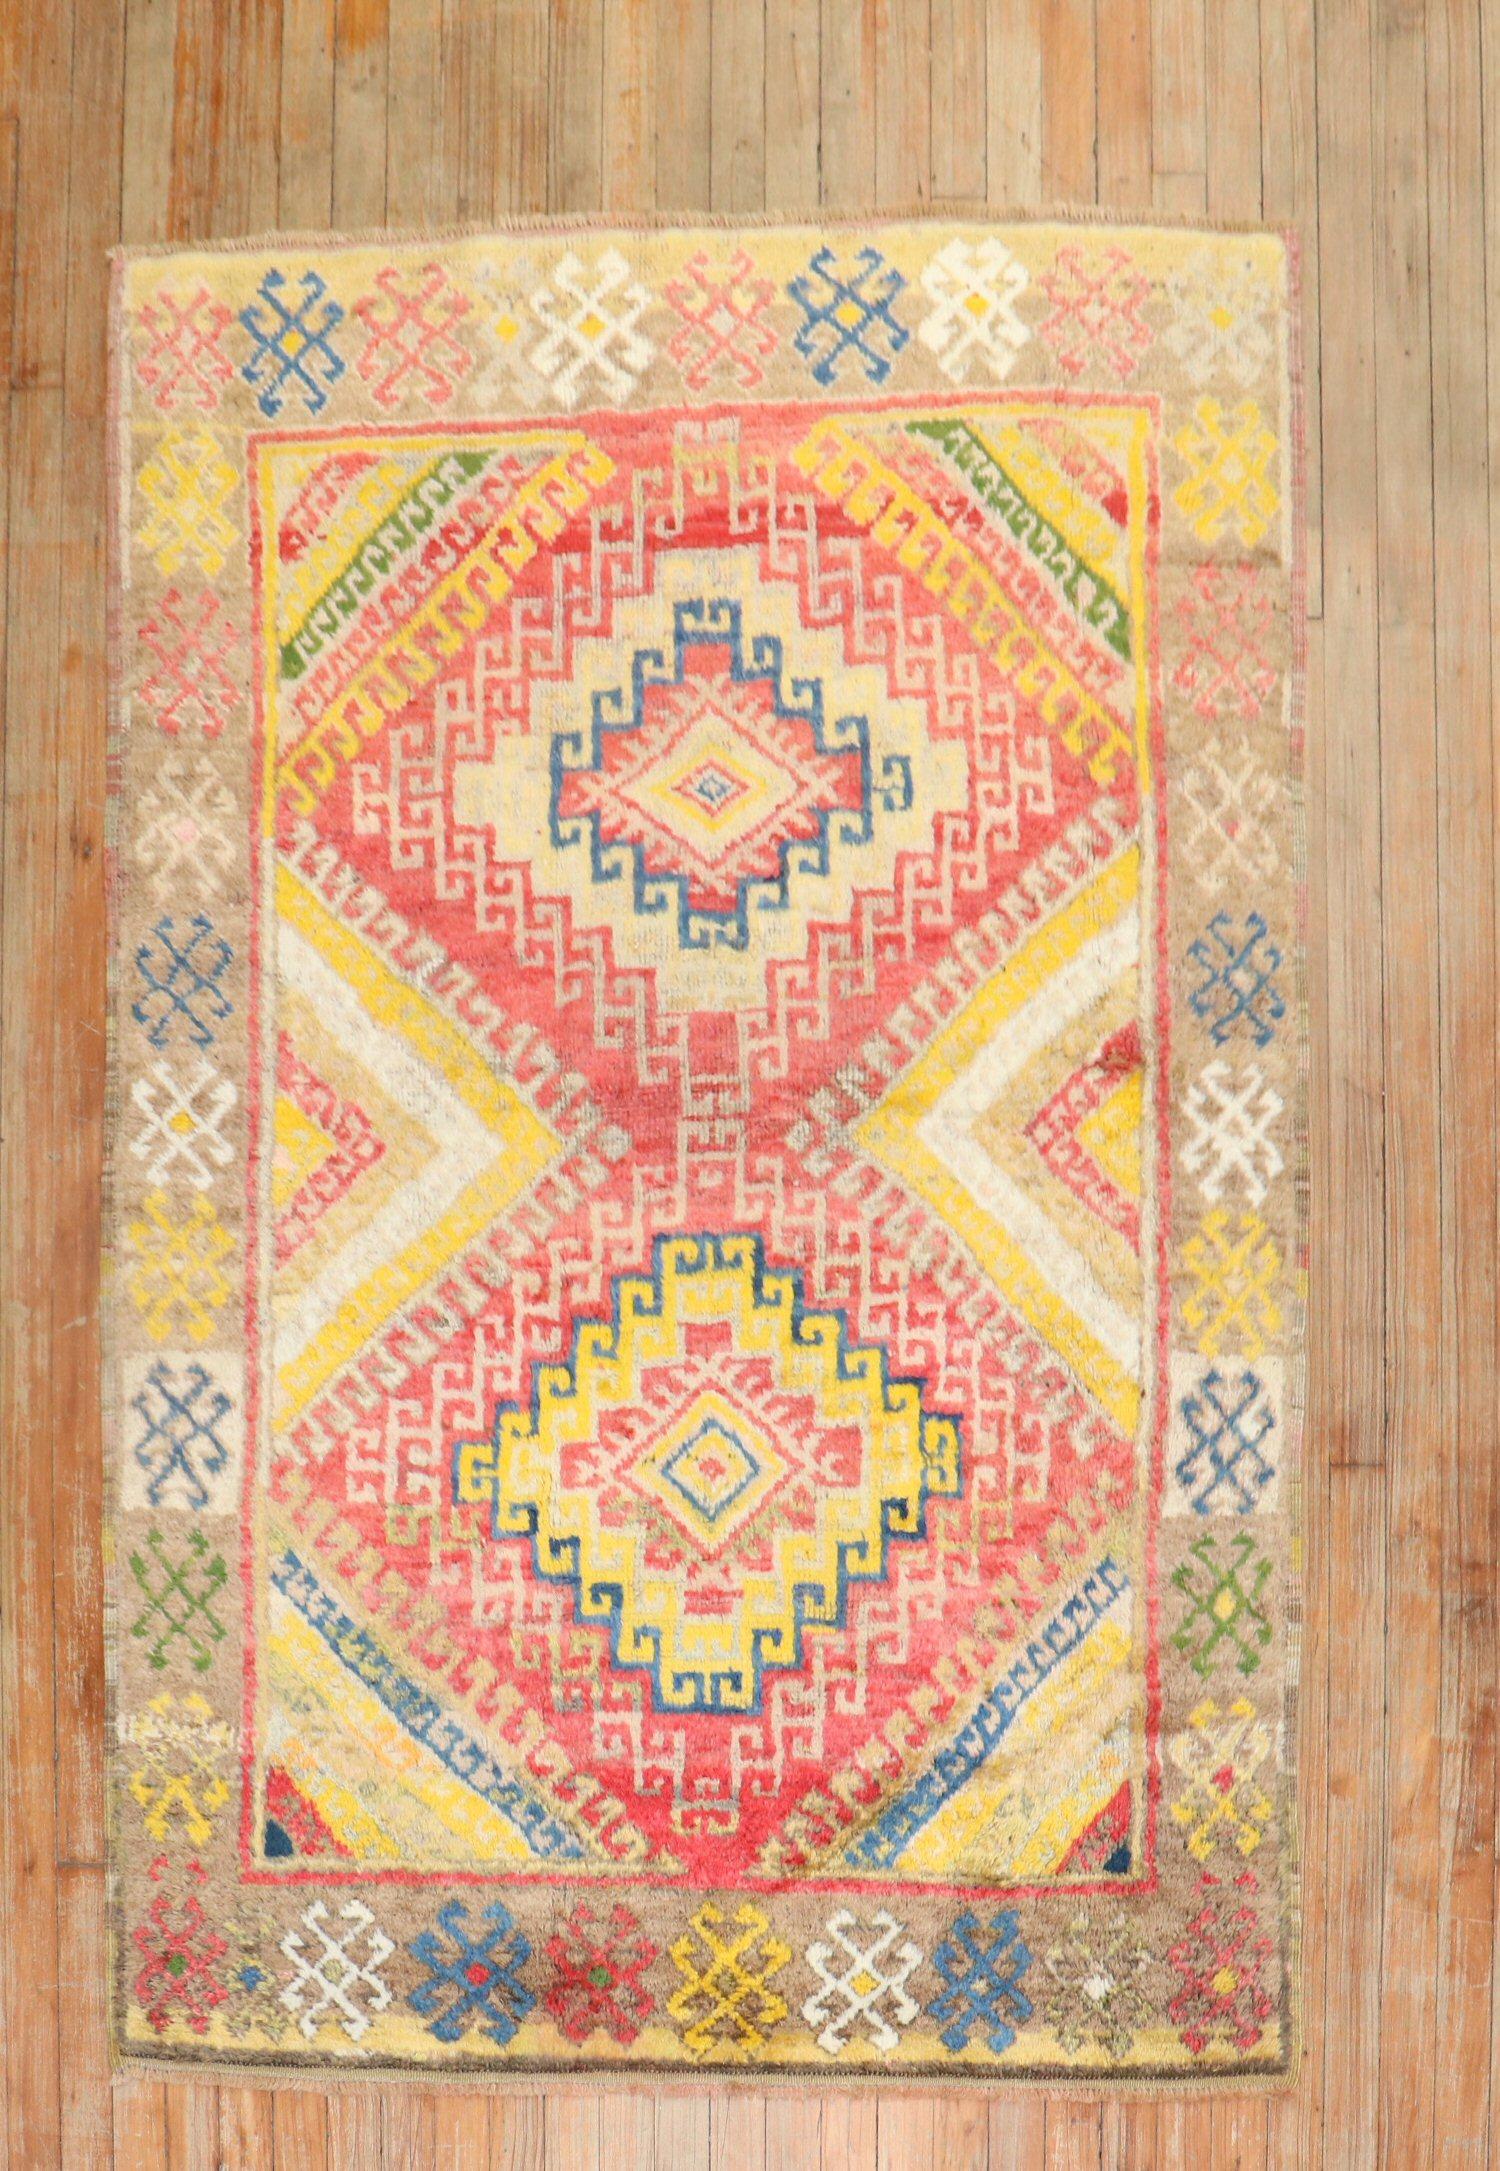 3. Quartal des 20. Jahrhunderts Hochfloriger geometrischer türkischer Konya-Teppich

Einzelheiten
Teppich Nr. j2853

Größe 4' 1